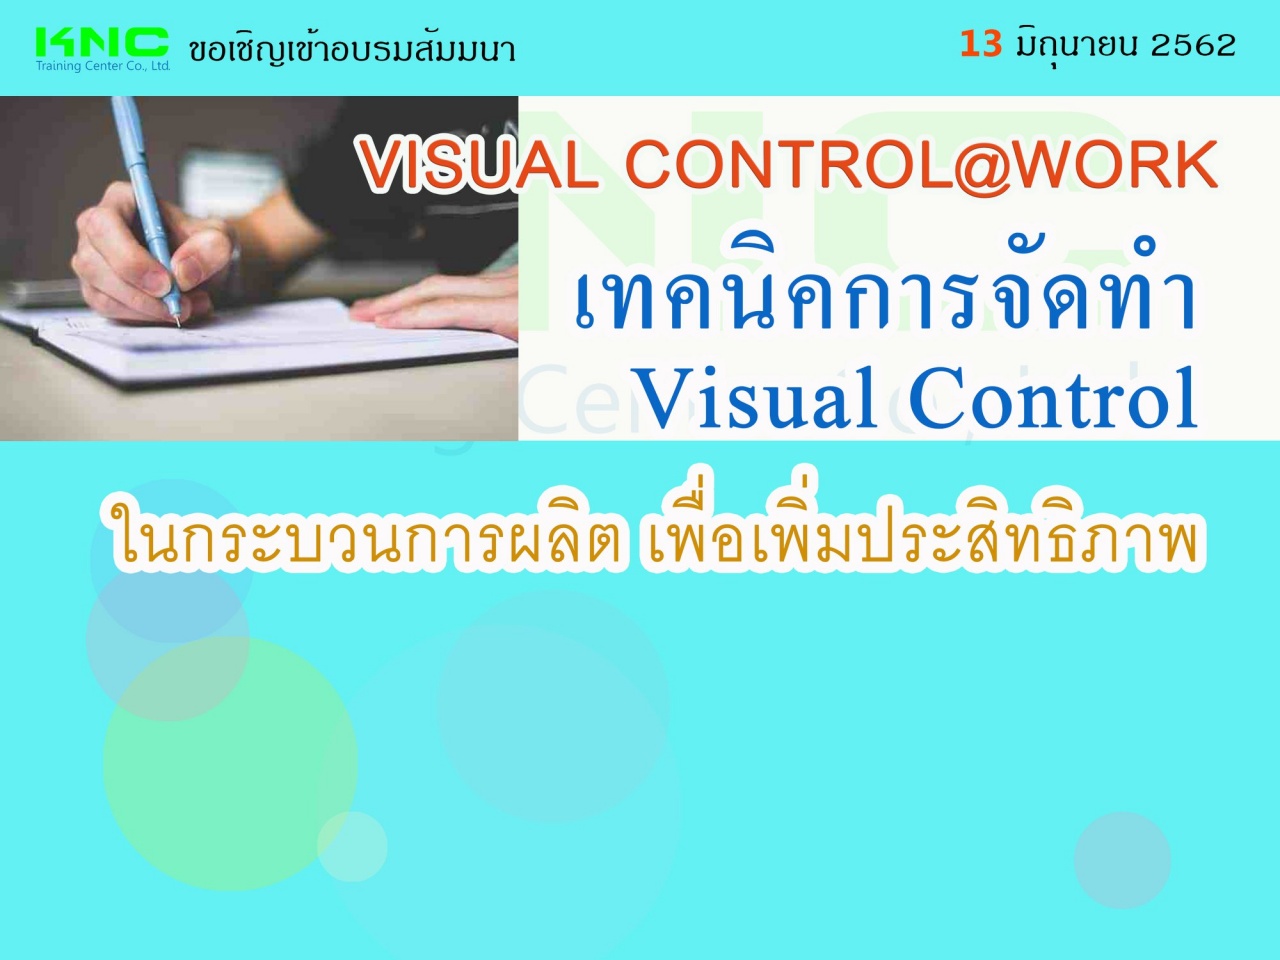 เทคนิคการจัดทำ Visual Control ในกระบวนการผลิต เพื่อเพิ่มประสิทธิภาพ